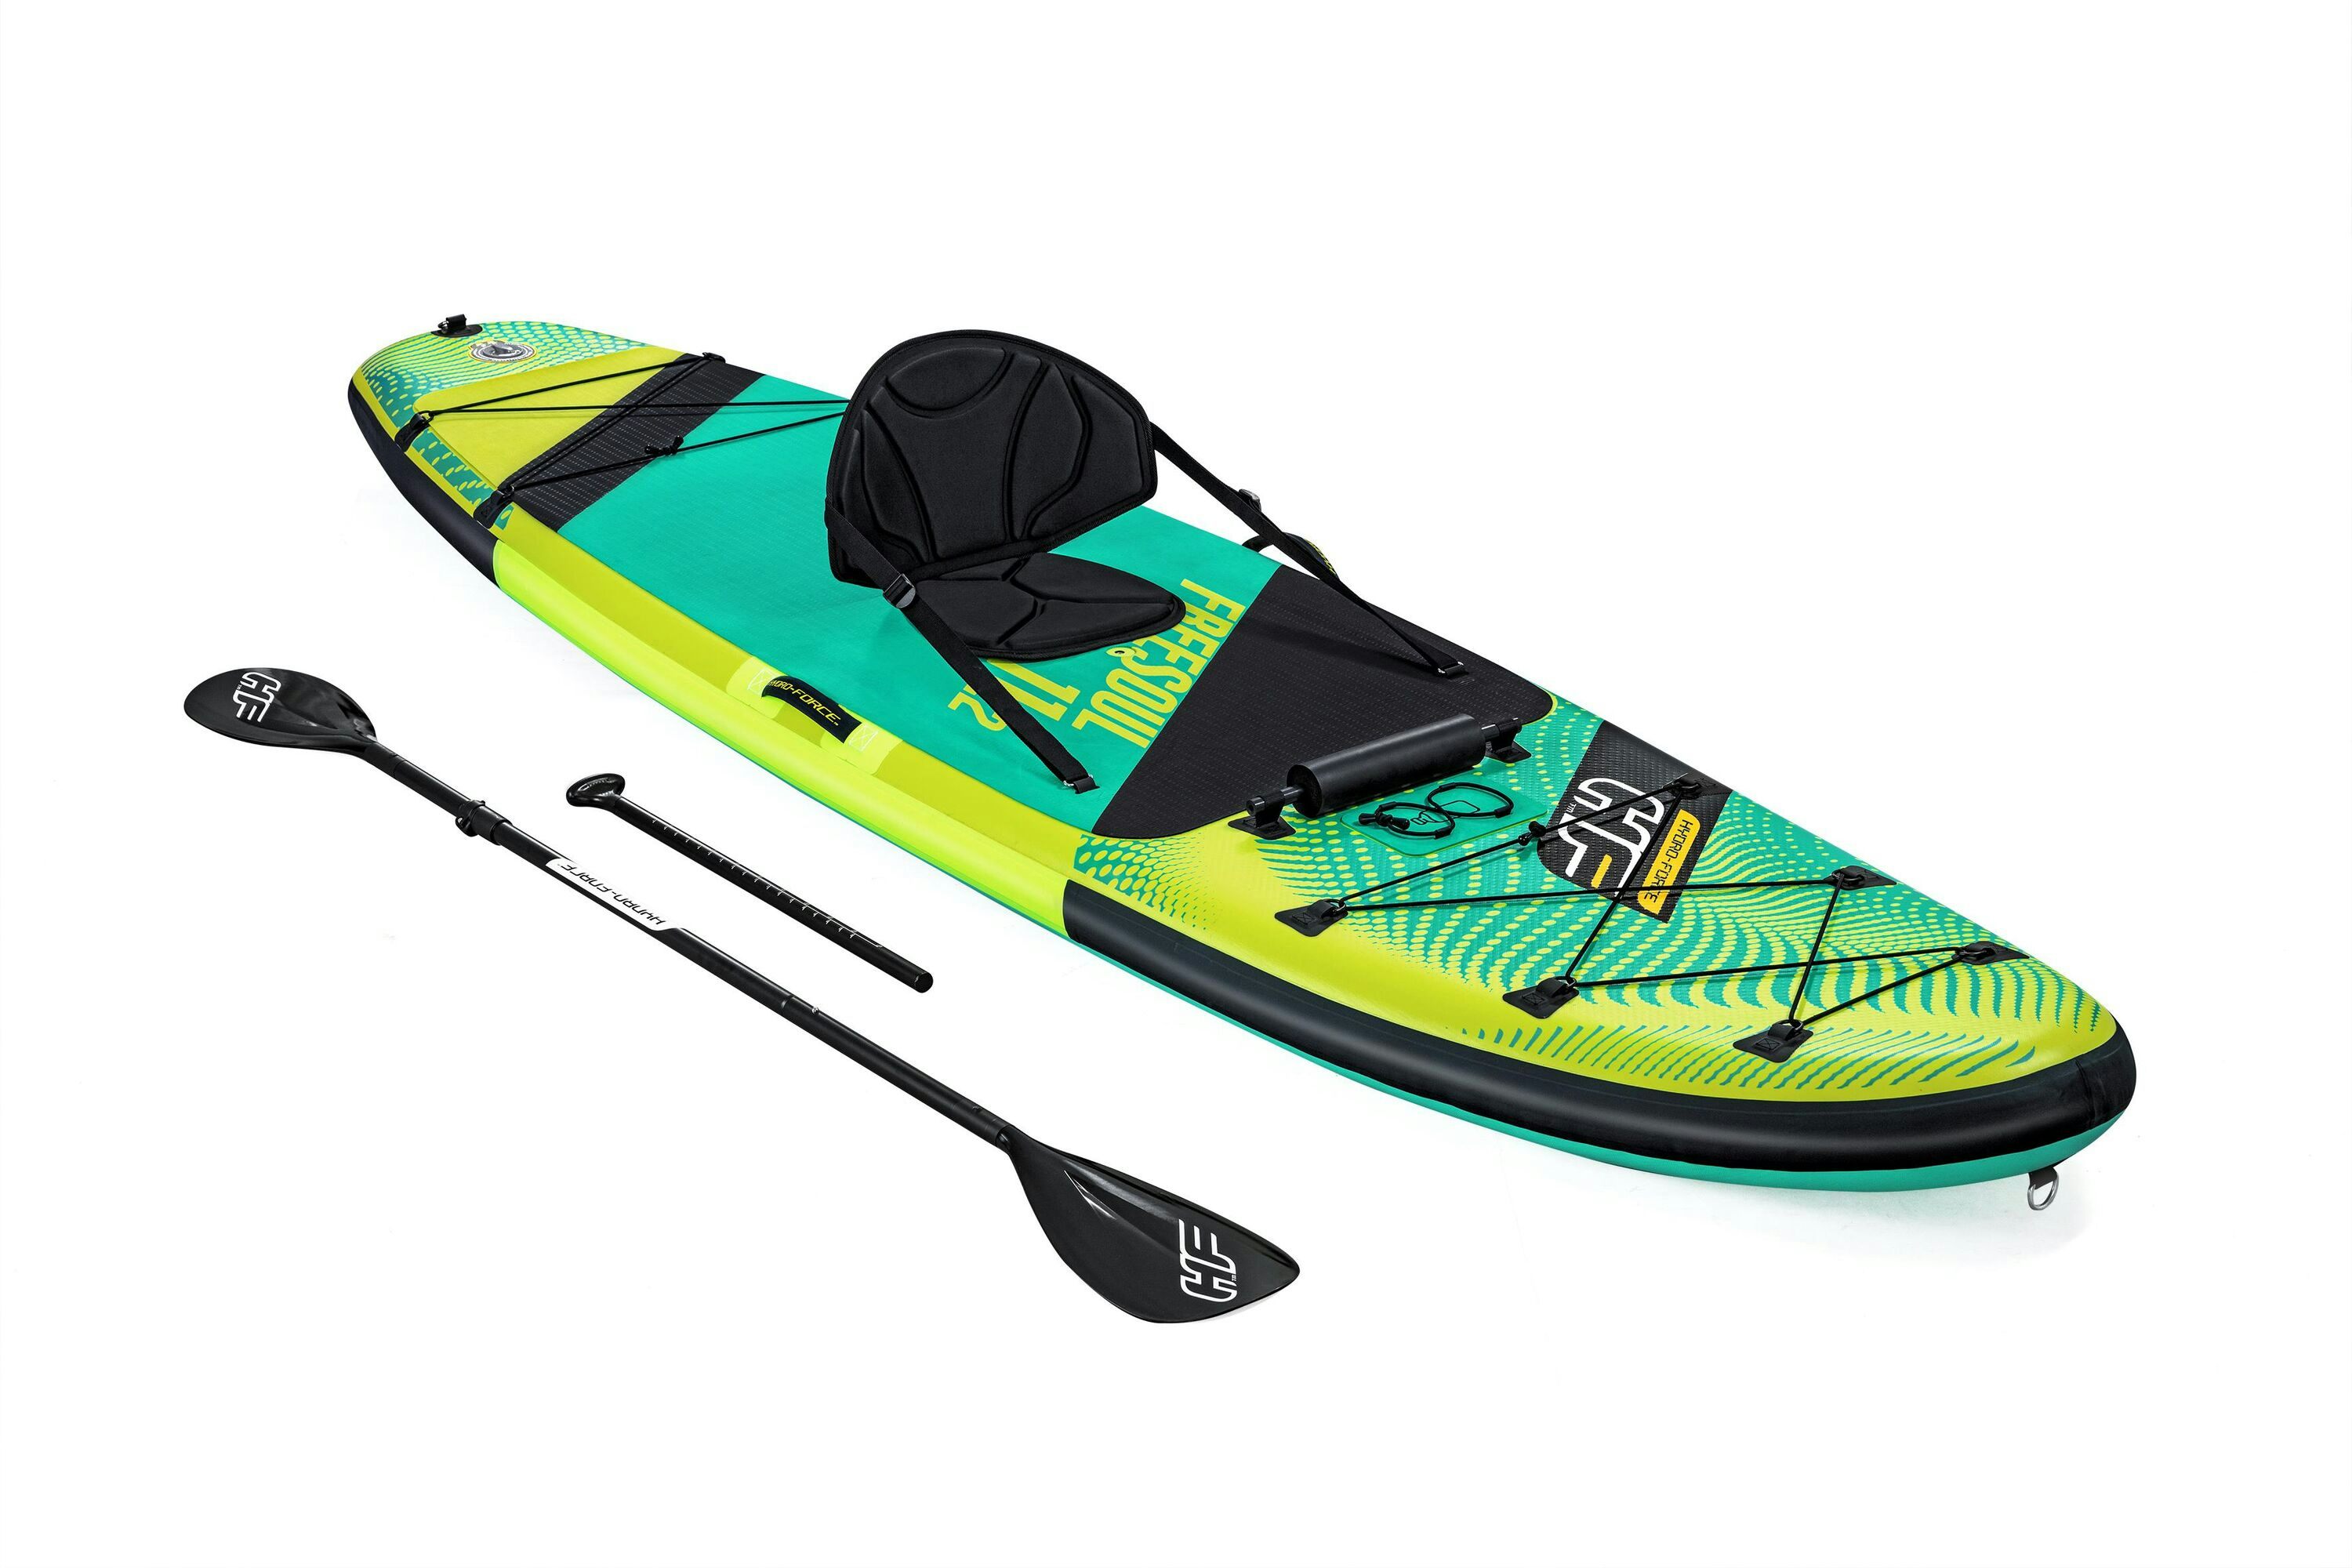 Sports d'eau Paddle SUP Freesoul Tech 340 x 89 x 15 cm transformable en kayak ou en planche à voile, avec siège, cale-pieds, pompe Bestway 1